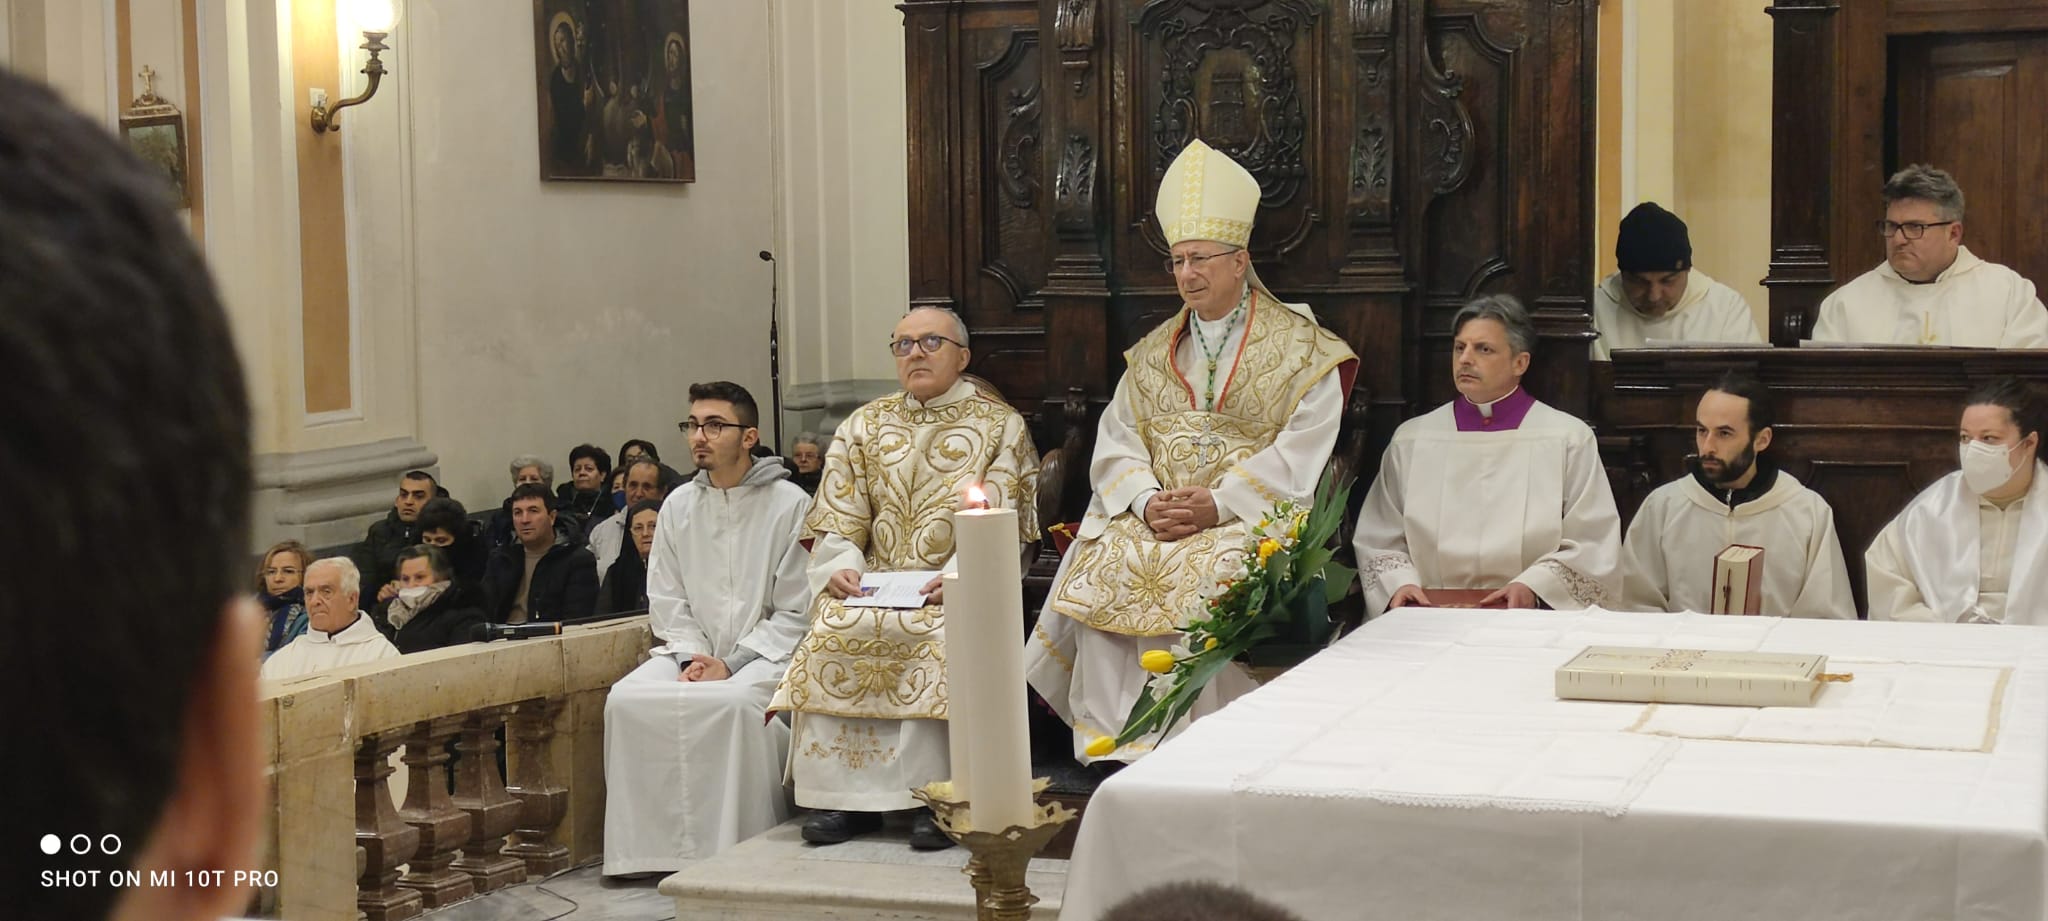 Mons. Caiazzo: “Inizio questo cammino da percorrere, nuovo impegno pastorale che segnerà la mia e vostra vita in questa antica e vivace Chiesa di Tricarico”